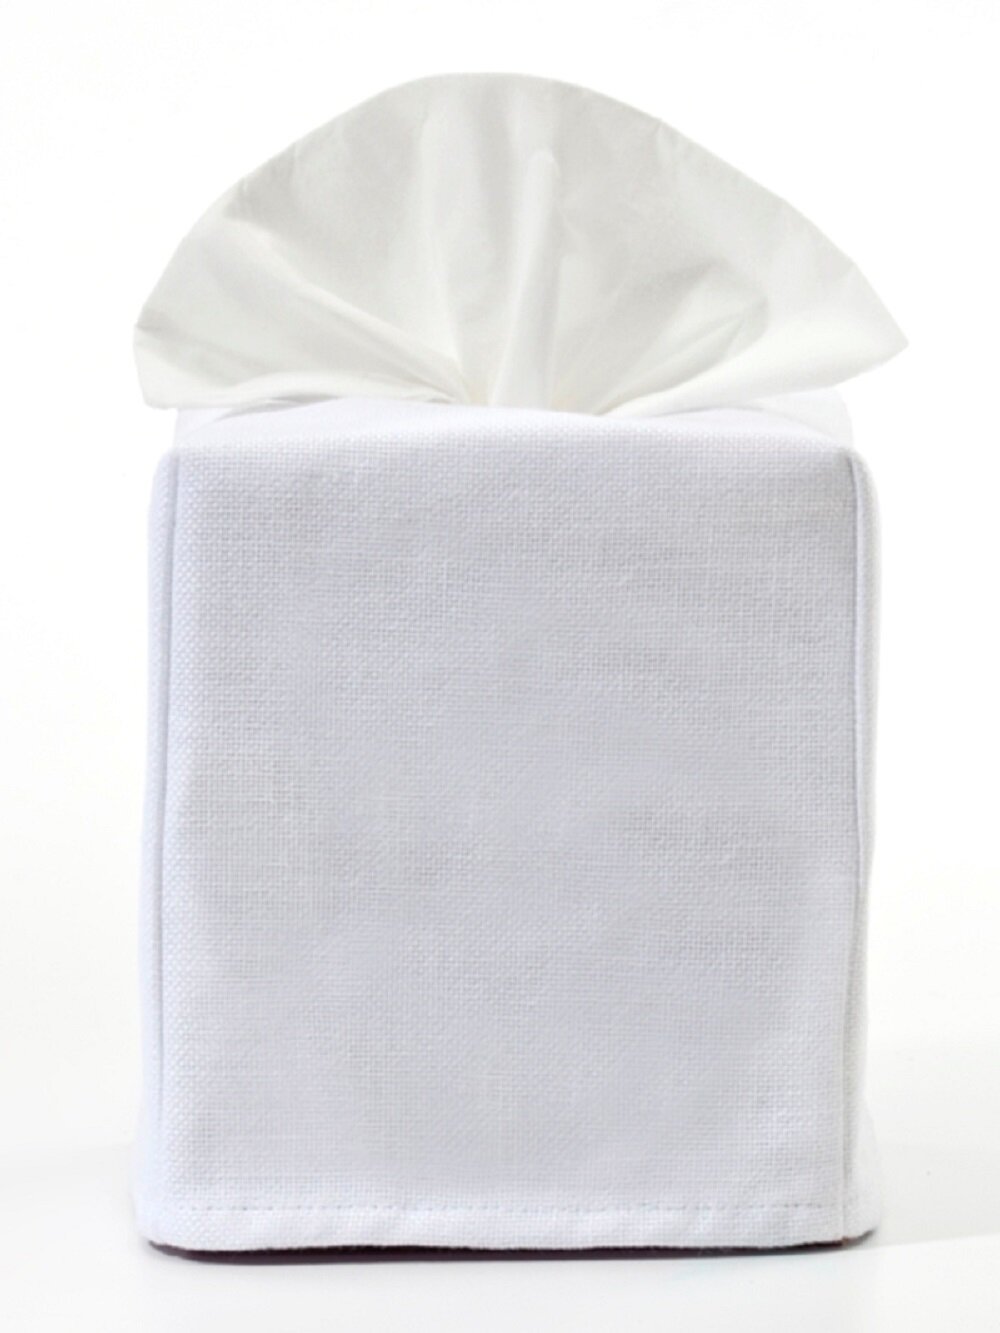 white linen tissue box cover